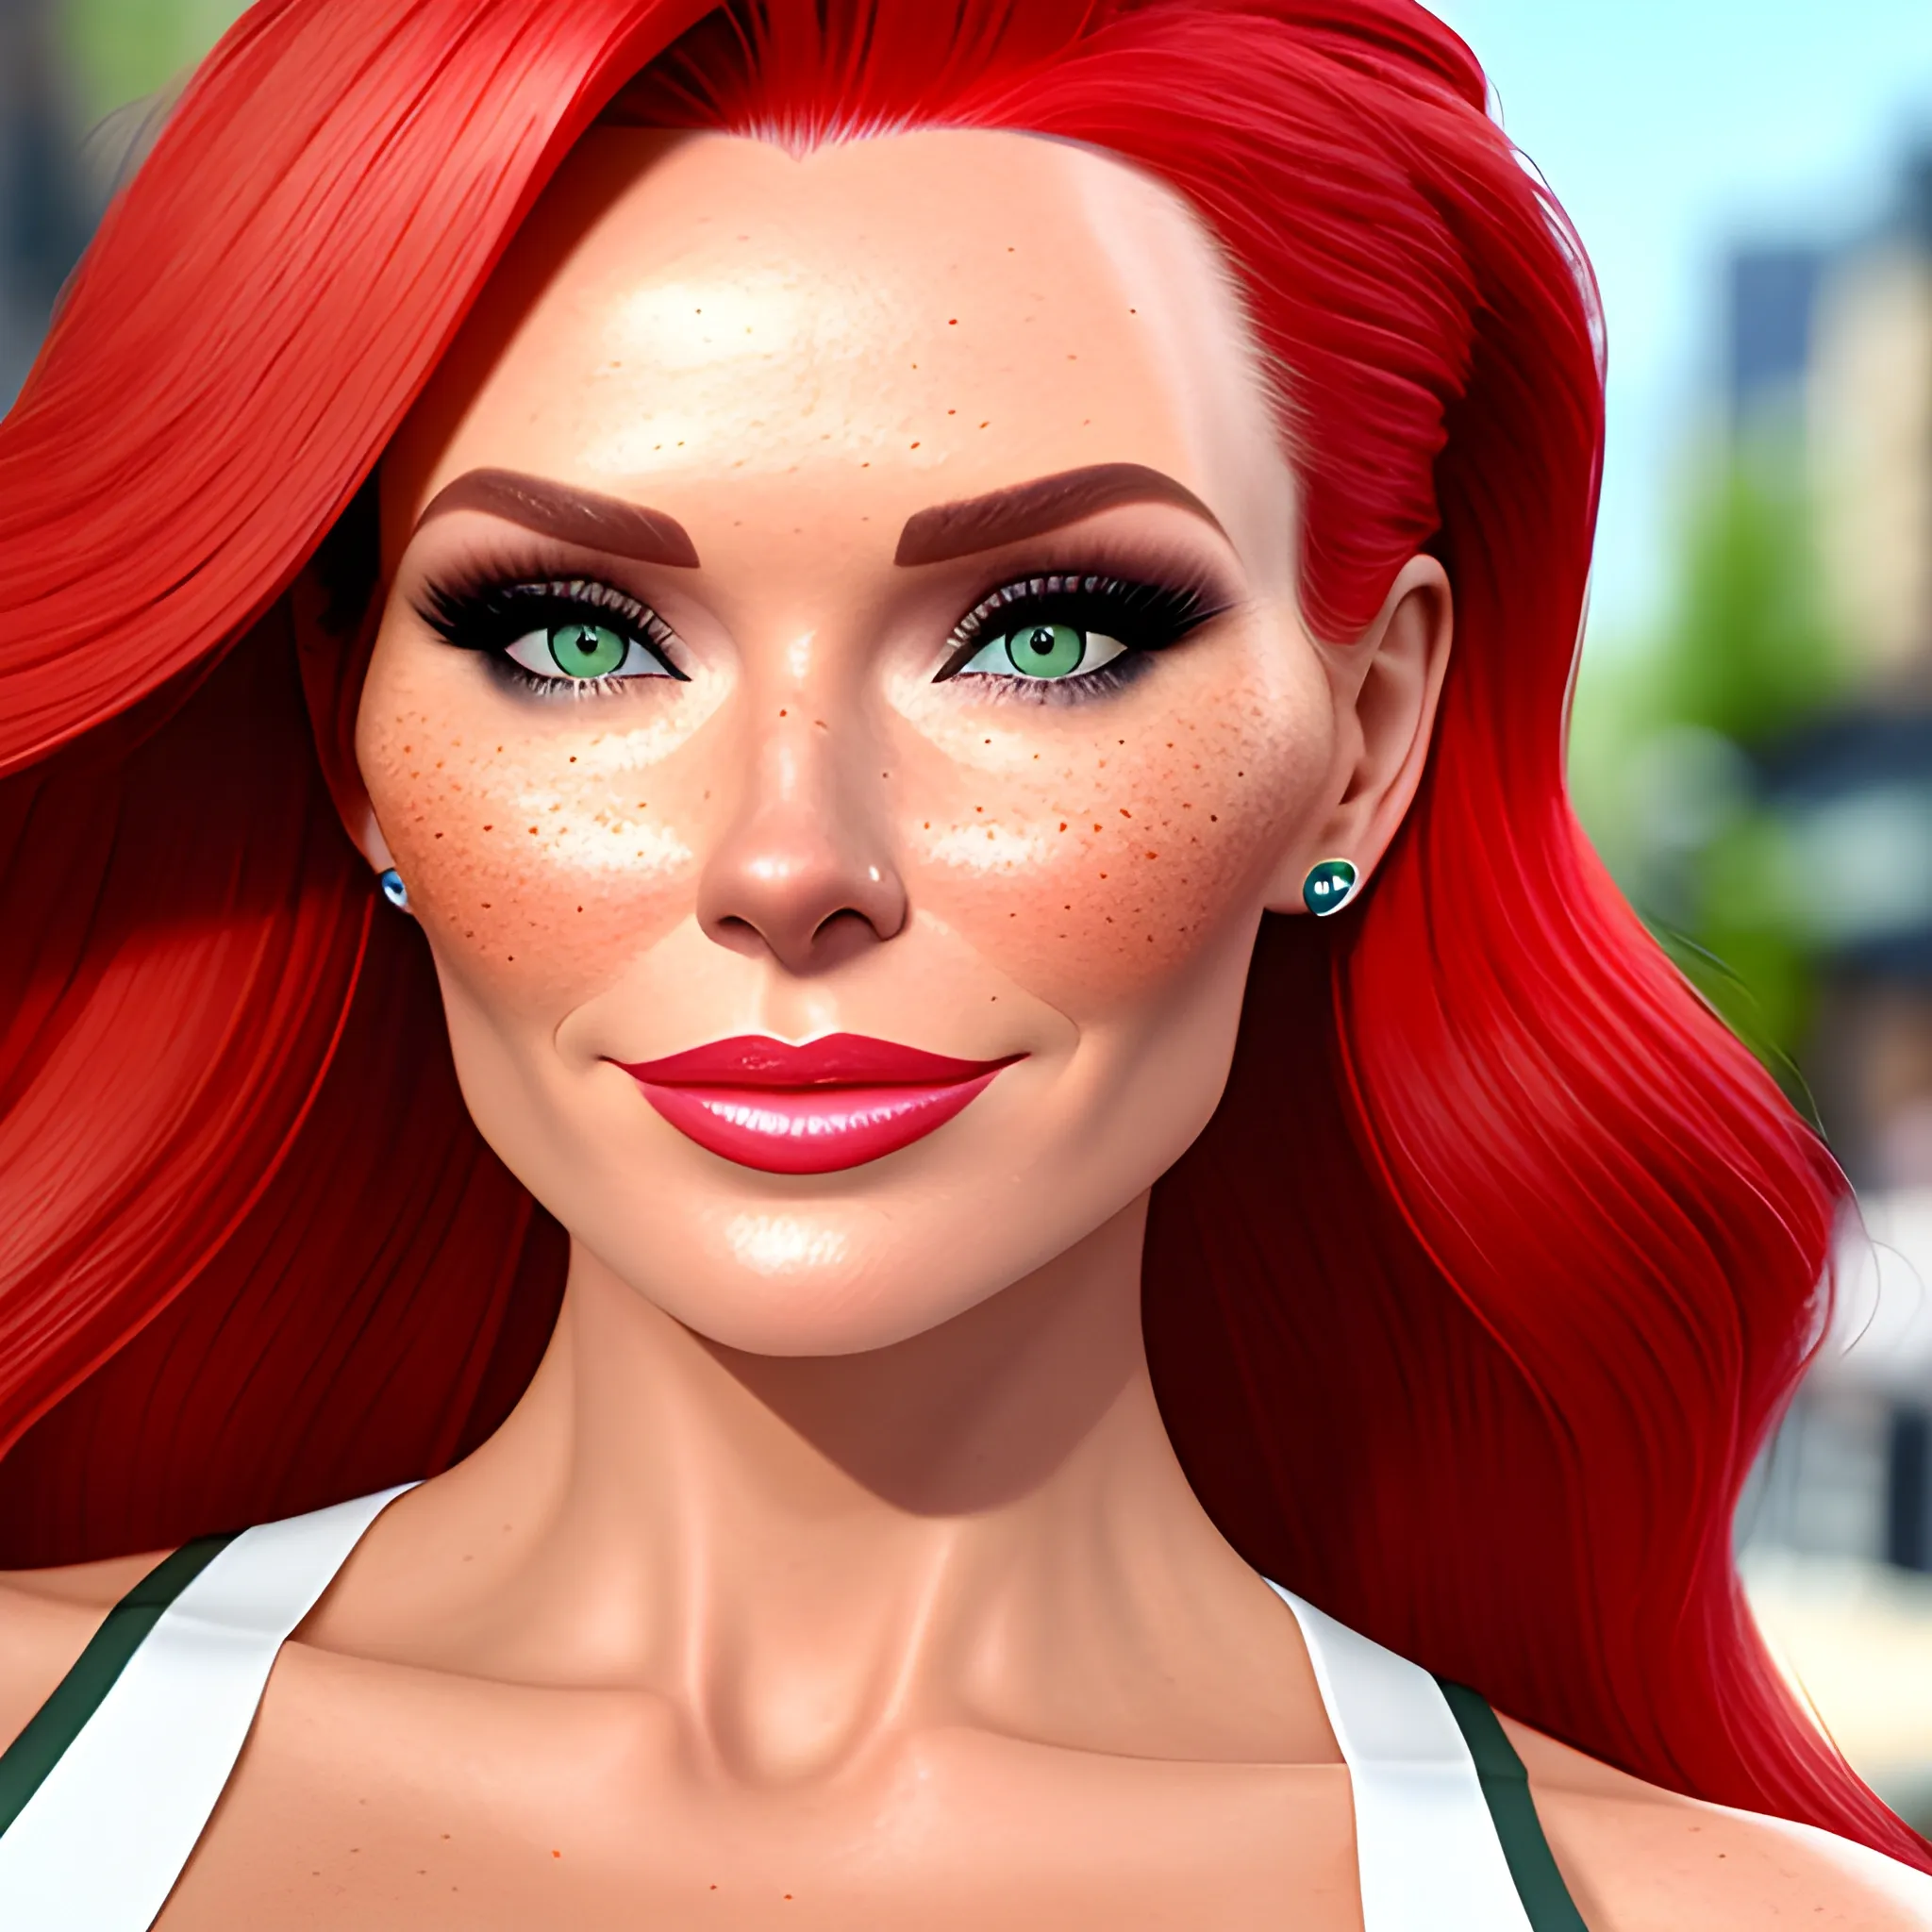 Amanda Holden / Shanina Shaik / Elsa Hosk face morph, 3D, red hair, green eyes, freckles, 90's mall background